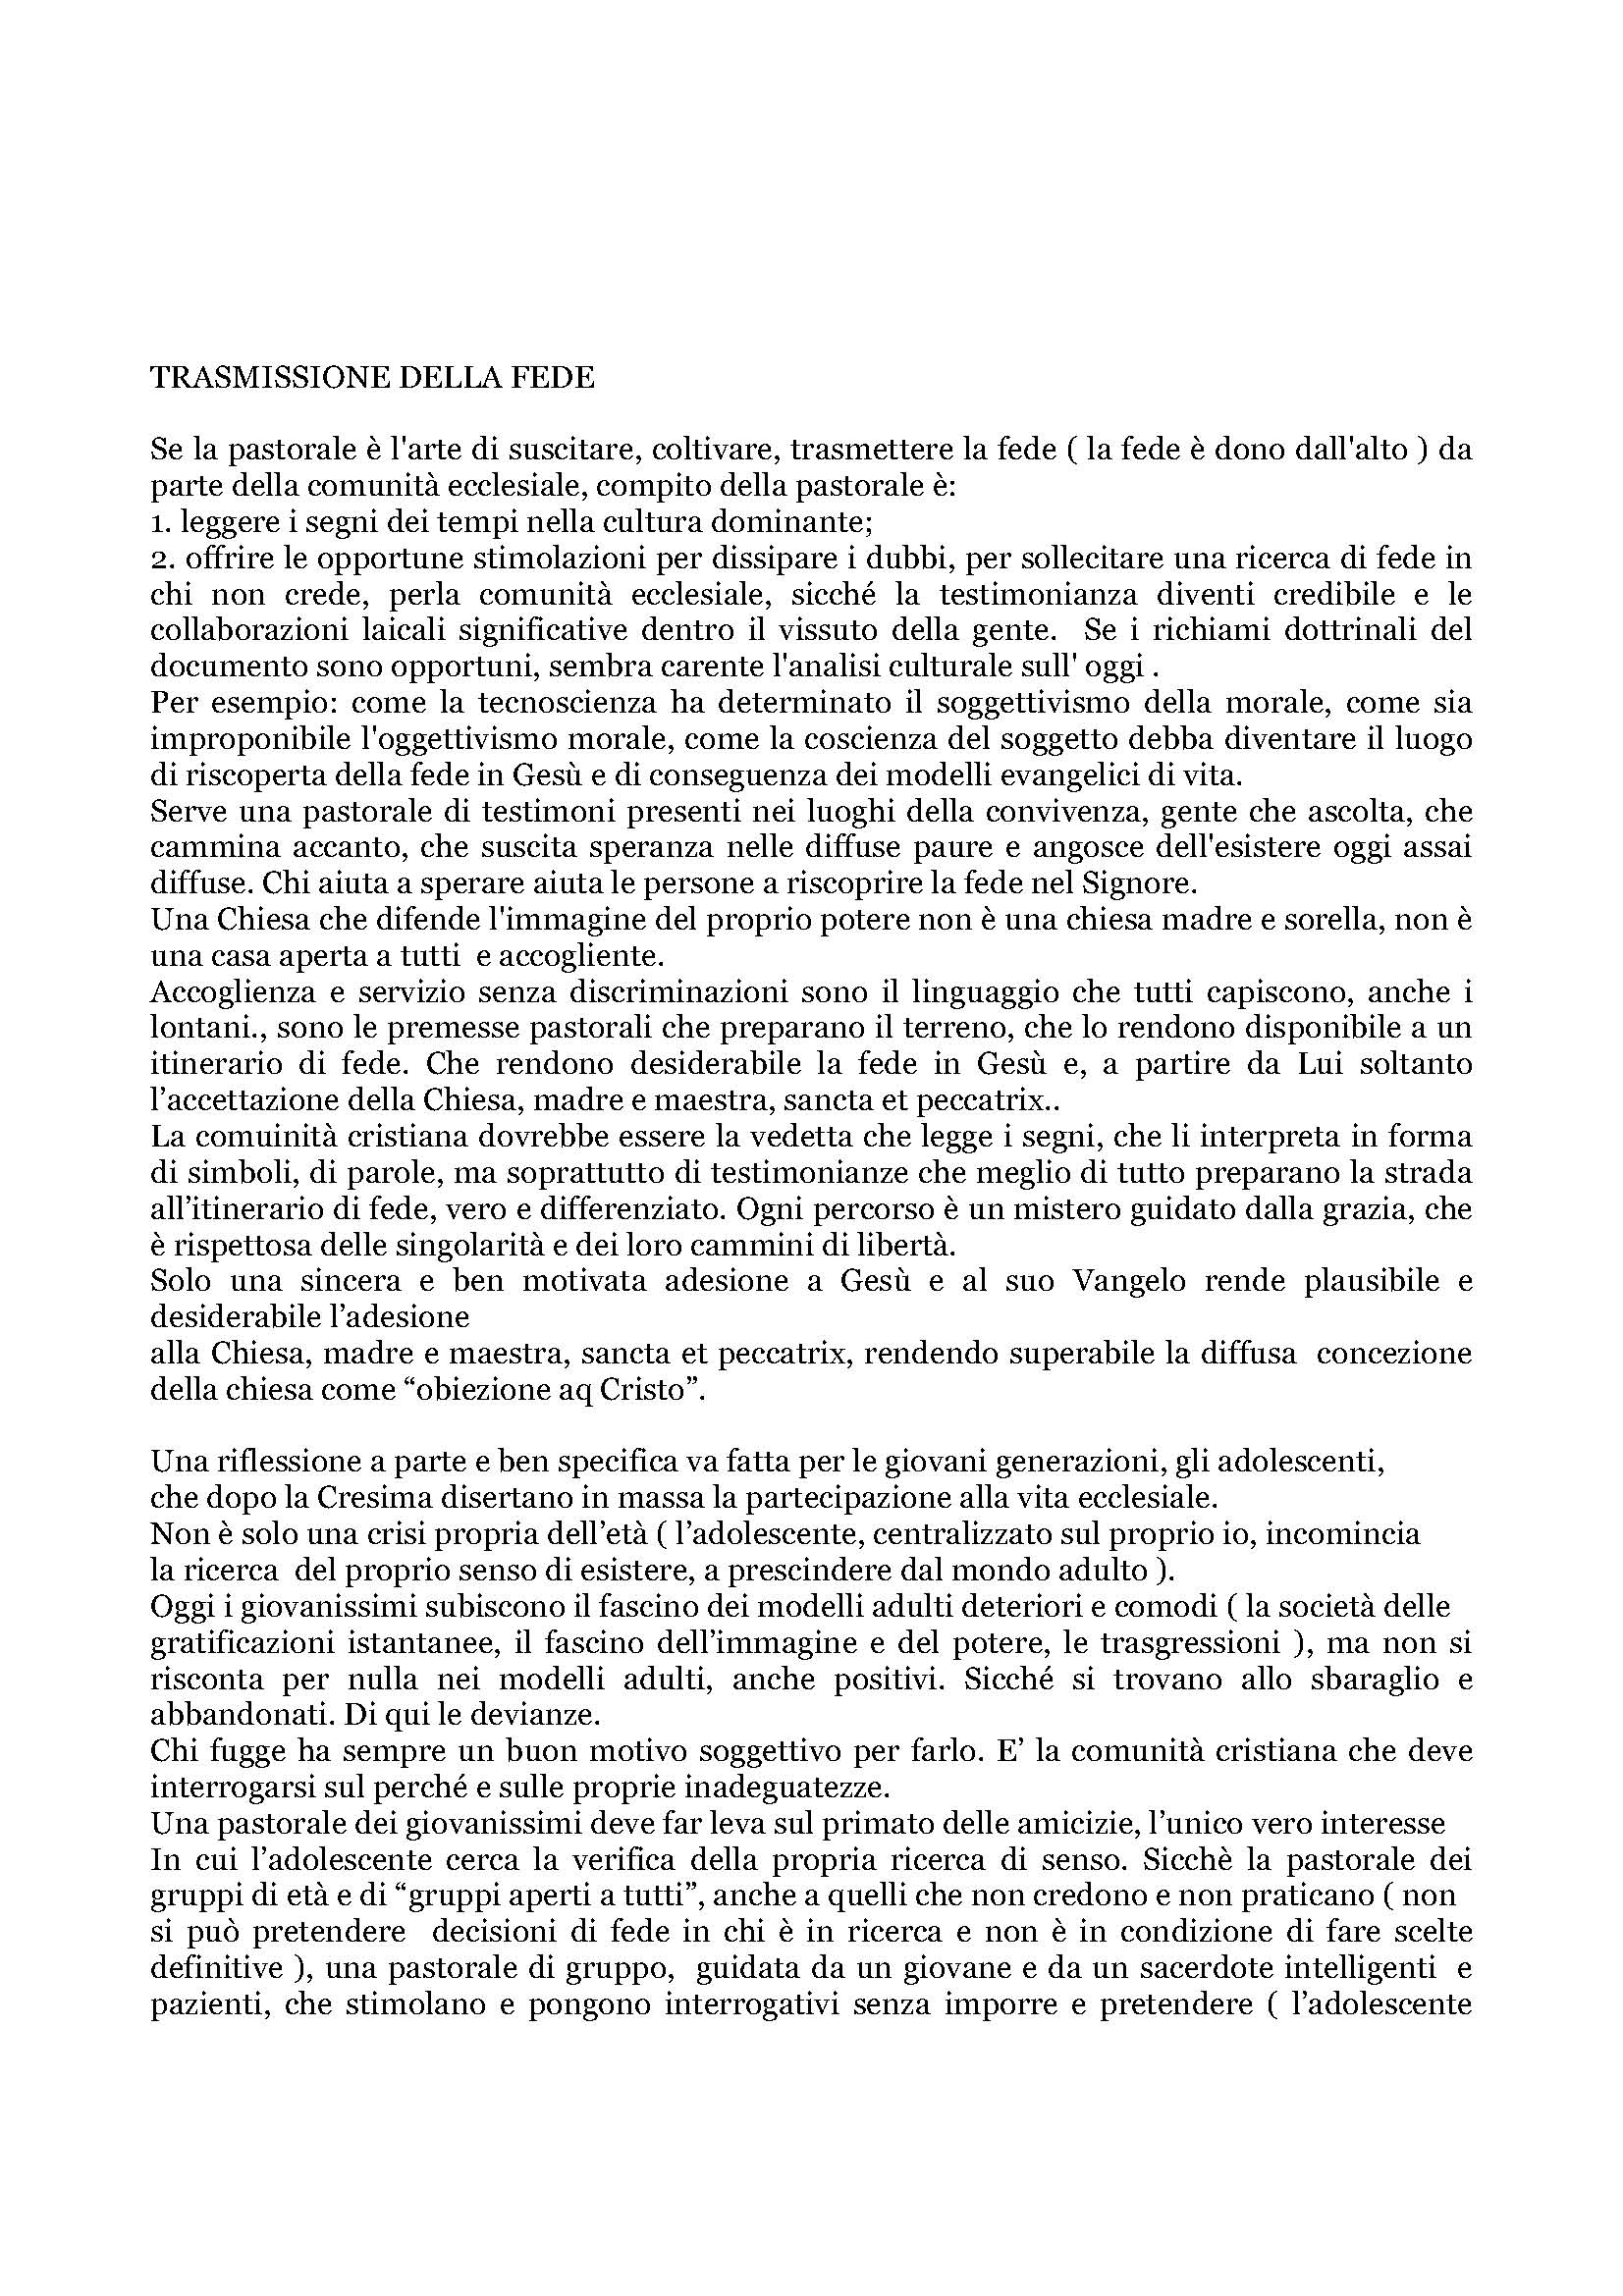 2002_pastorale_Trasmissione_della_fede.pdf